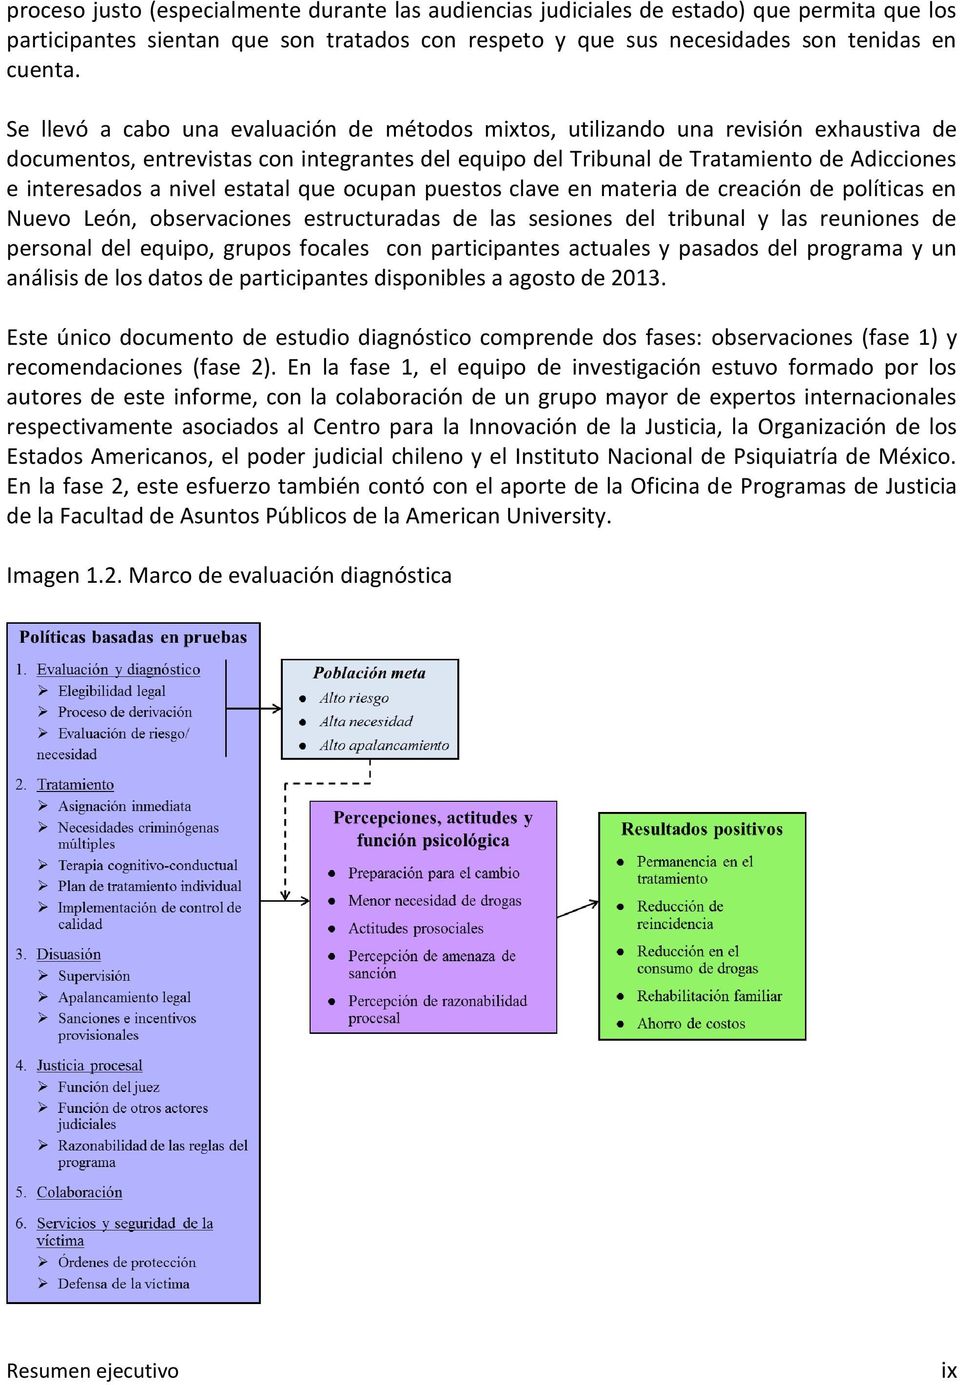 nivel estatal que ocupan puestos clave en materia de creación de políticas en Nuevo León, observaciones estructuradas de las sesiones del tribunal y las reuniones de personal del equipo, grupos